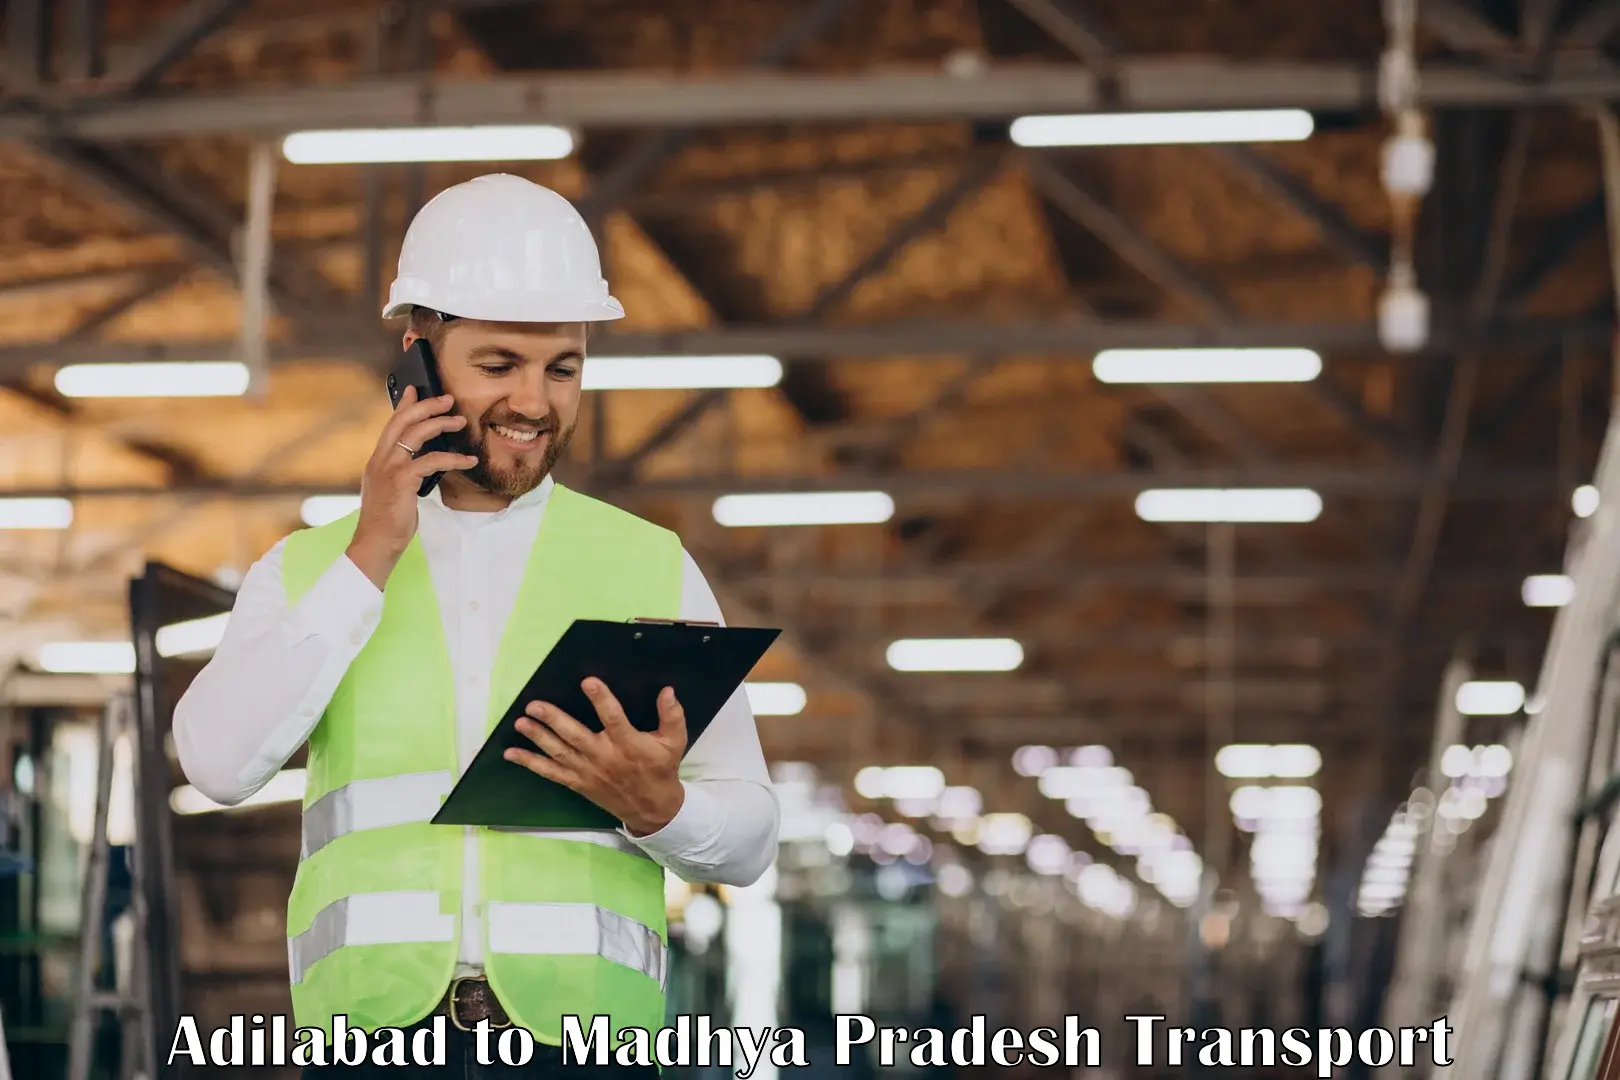 Shipping partner Adilabad to Vidisha